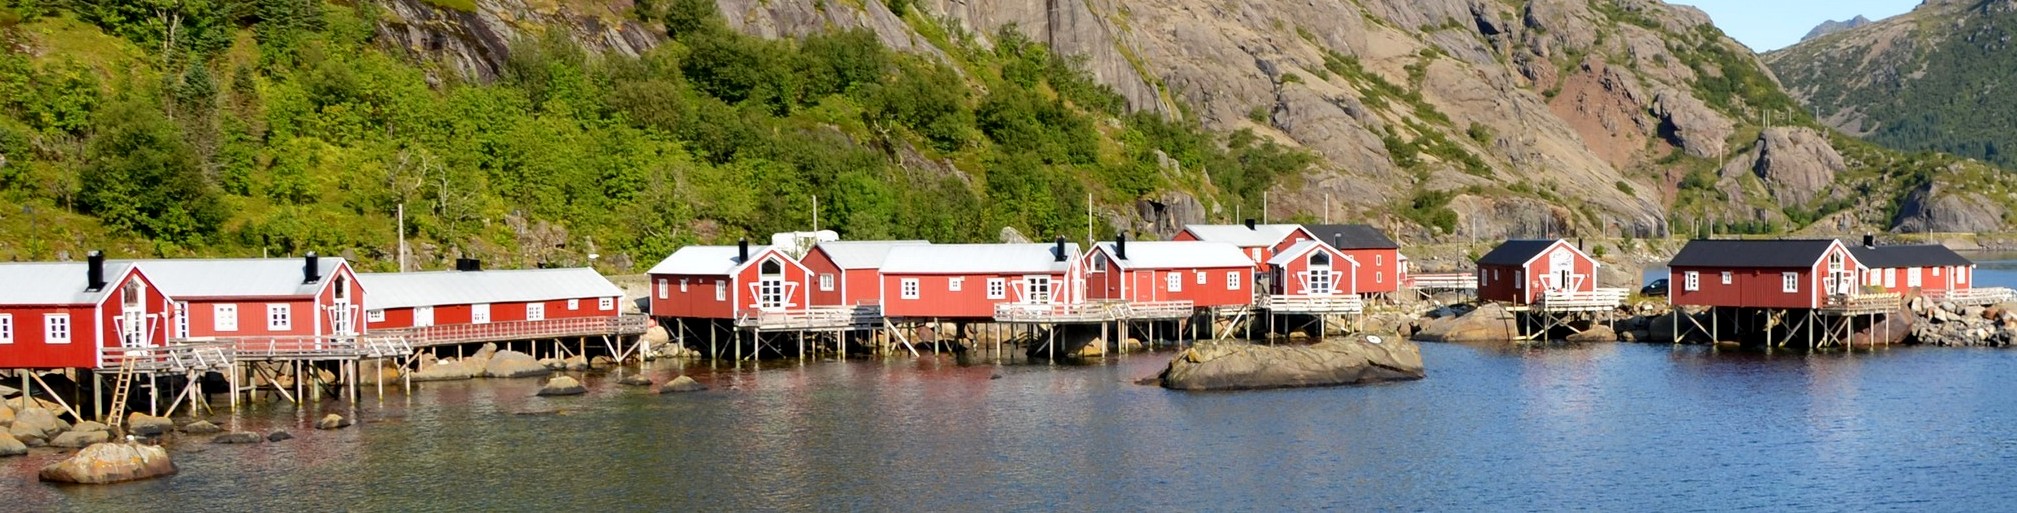 Geirangerfjord - nejnavštěvovanější norský fjord